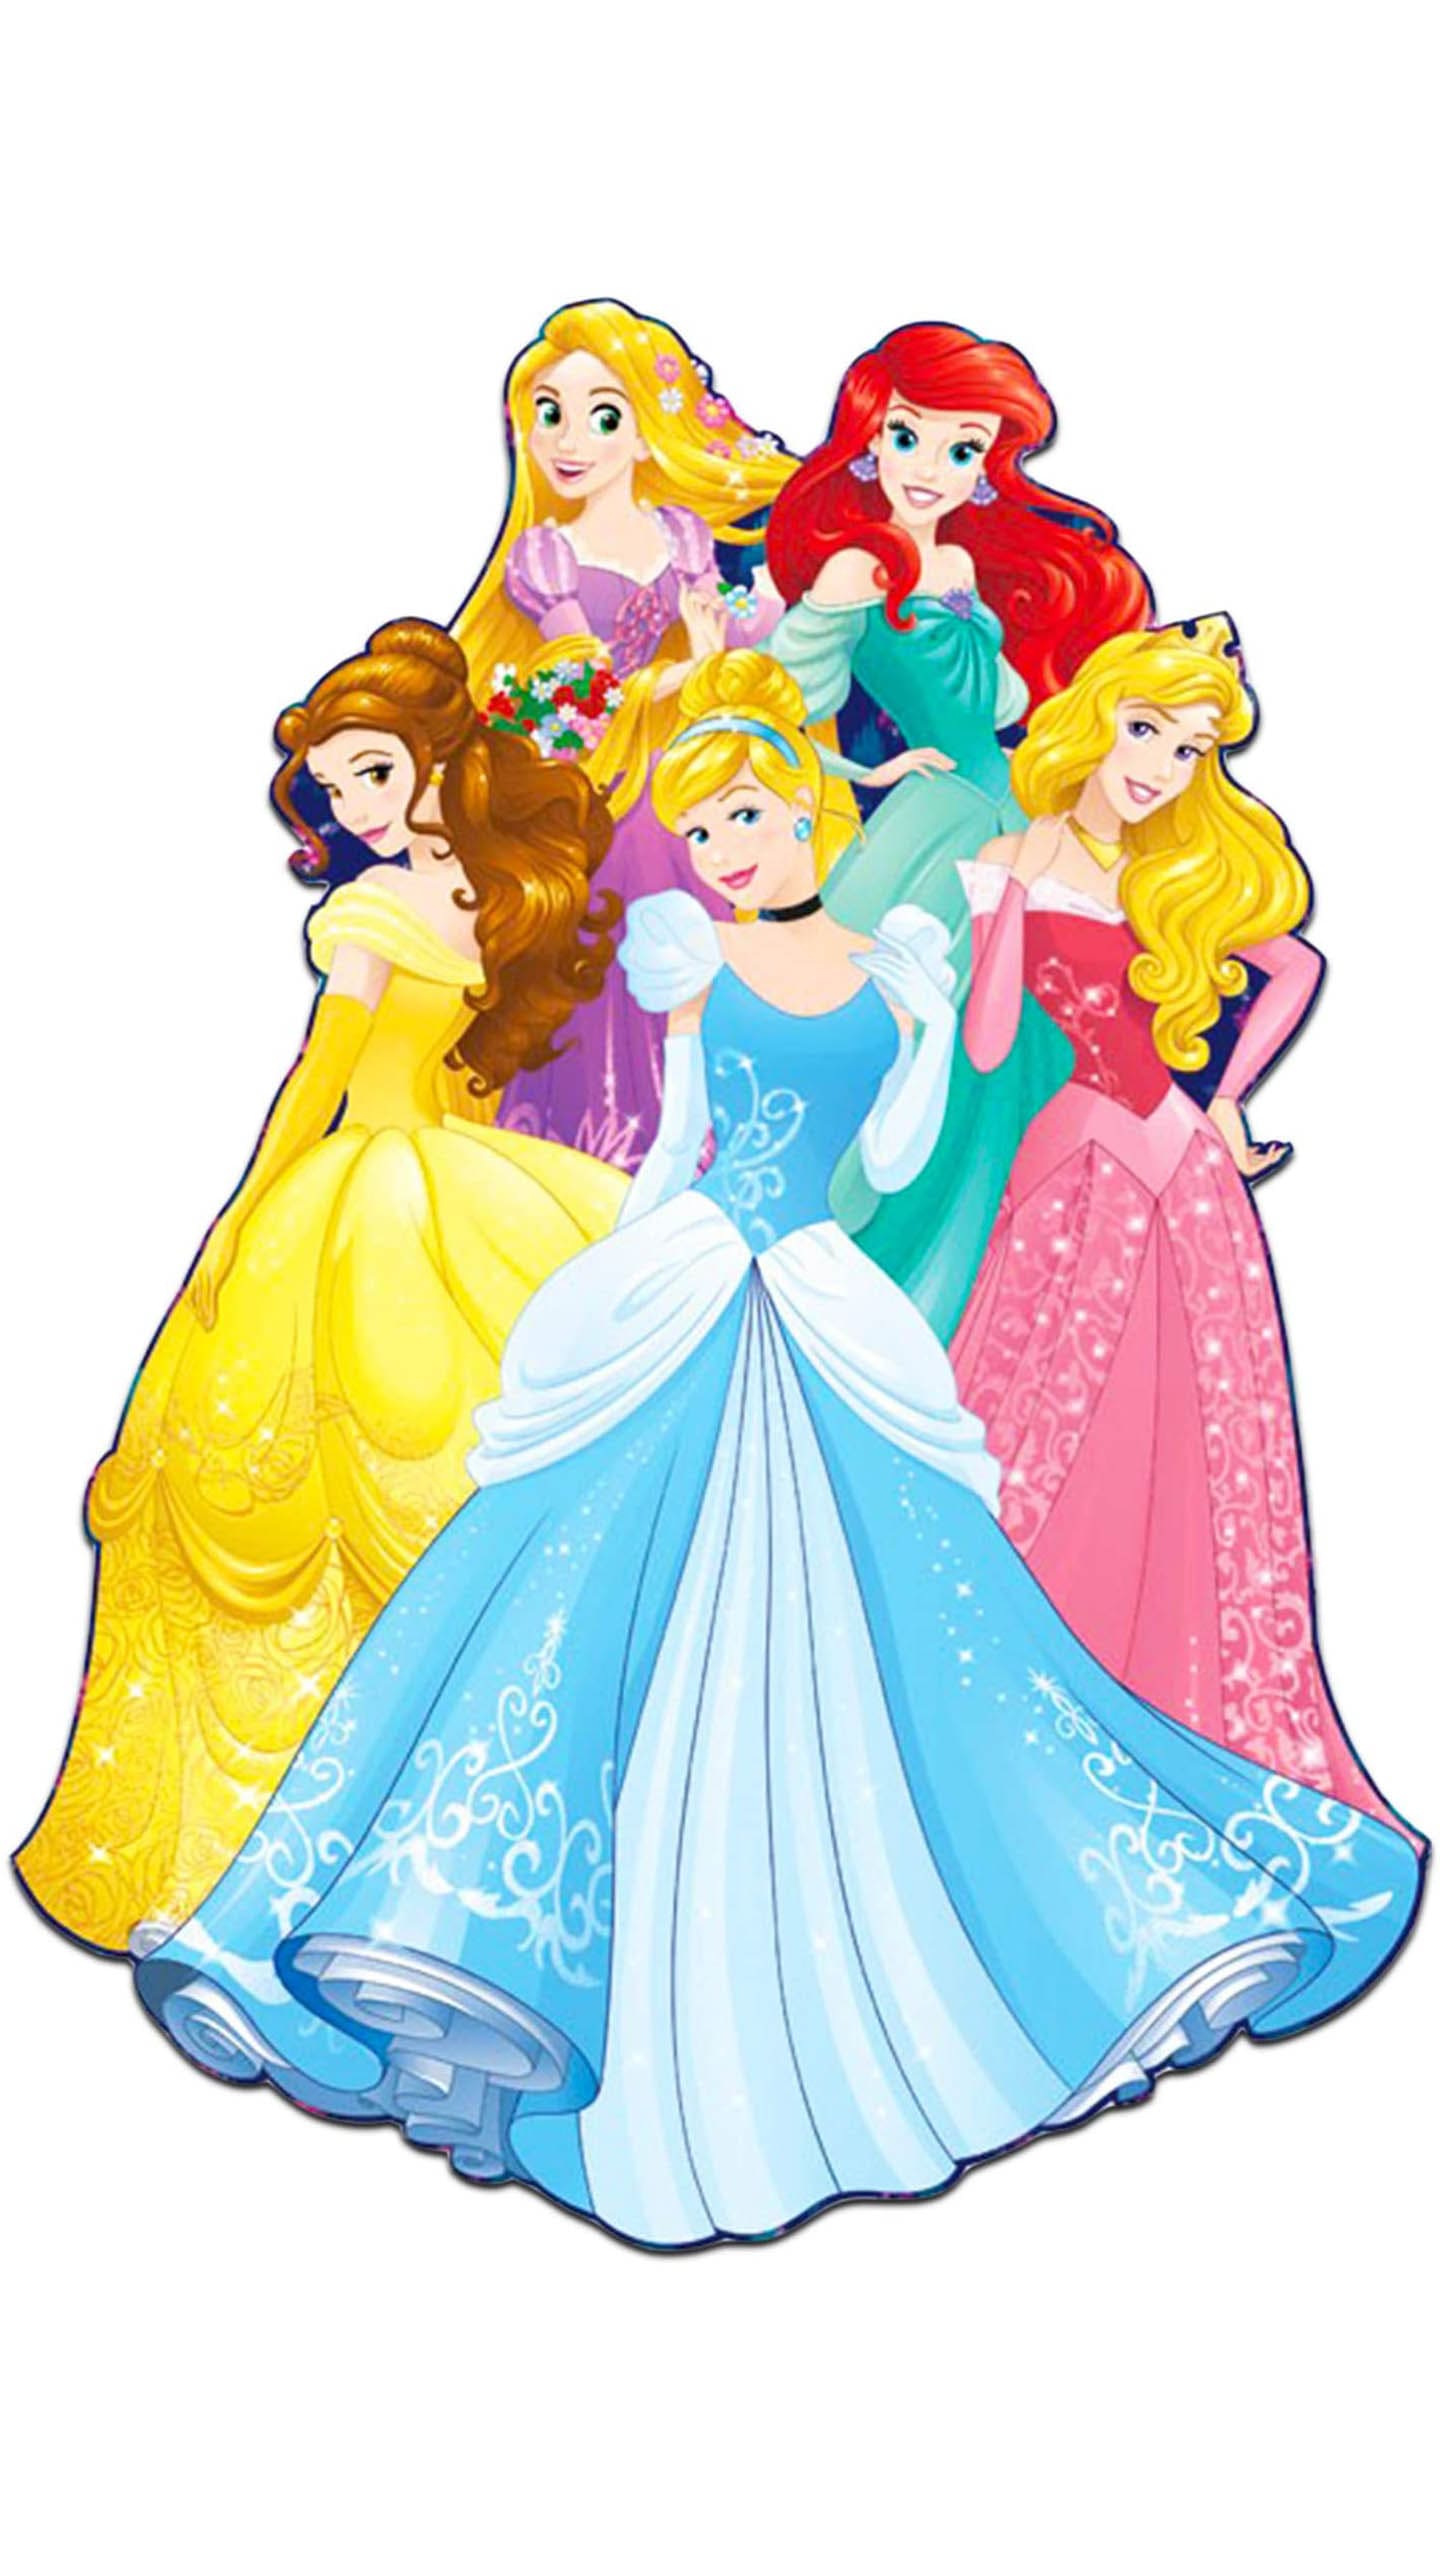 Disney Princess Wallpaper - TubeWP